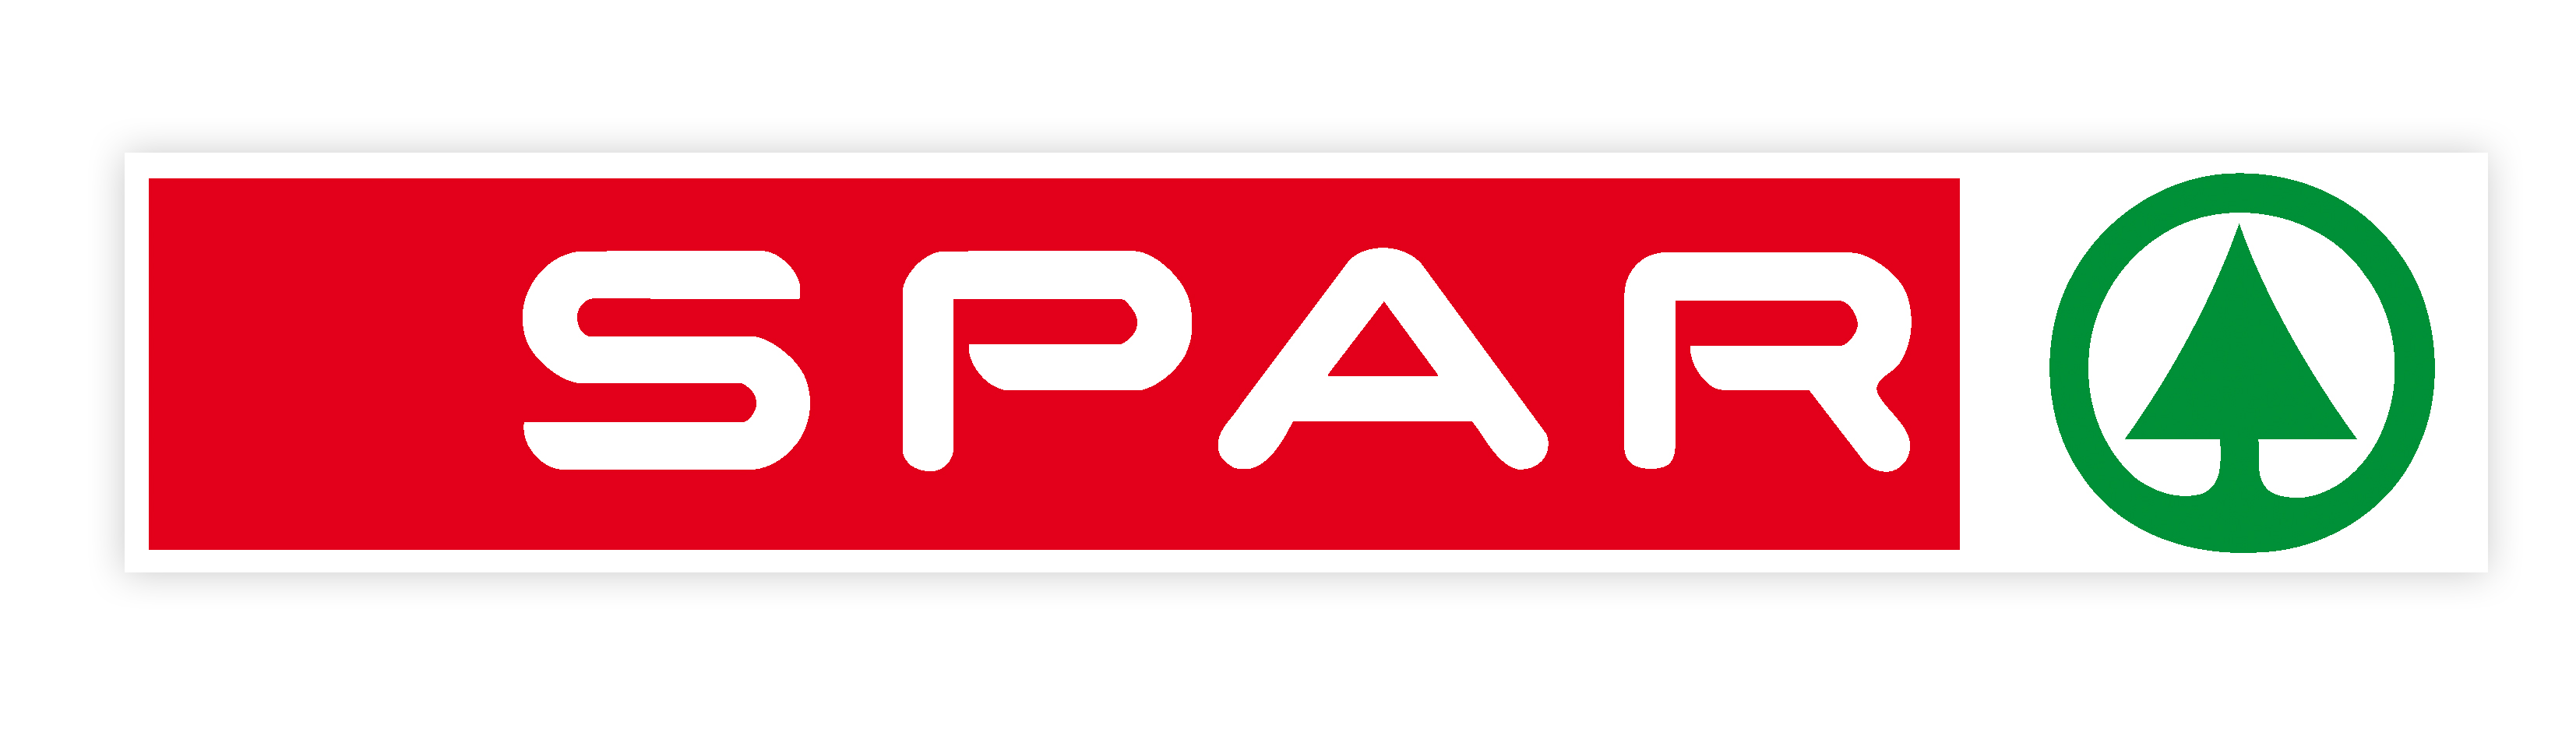 Spar Buildit Logo photo - 1